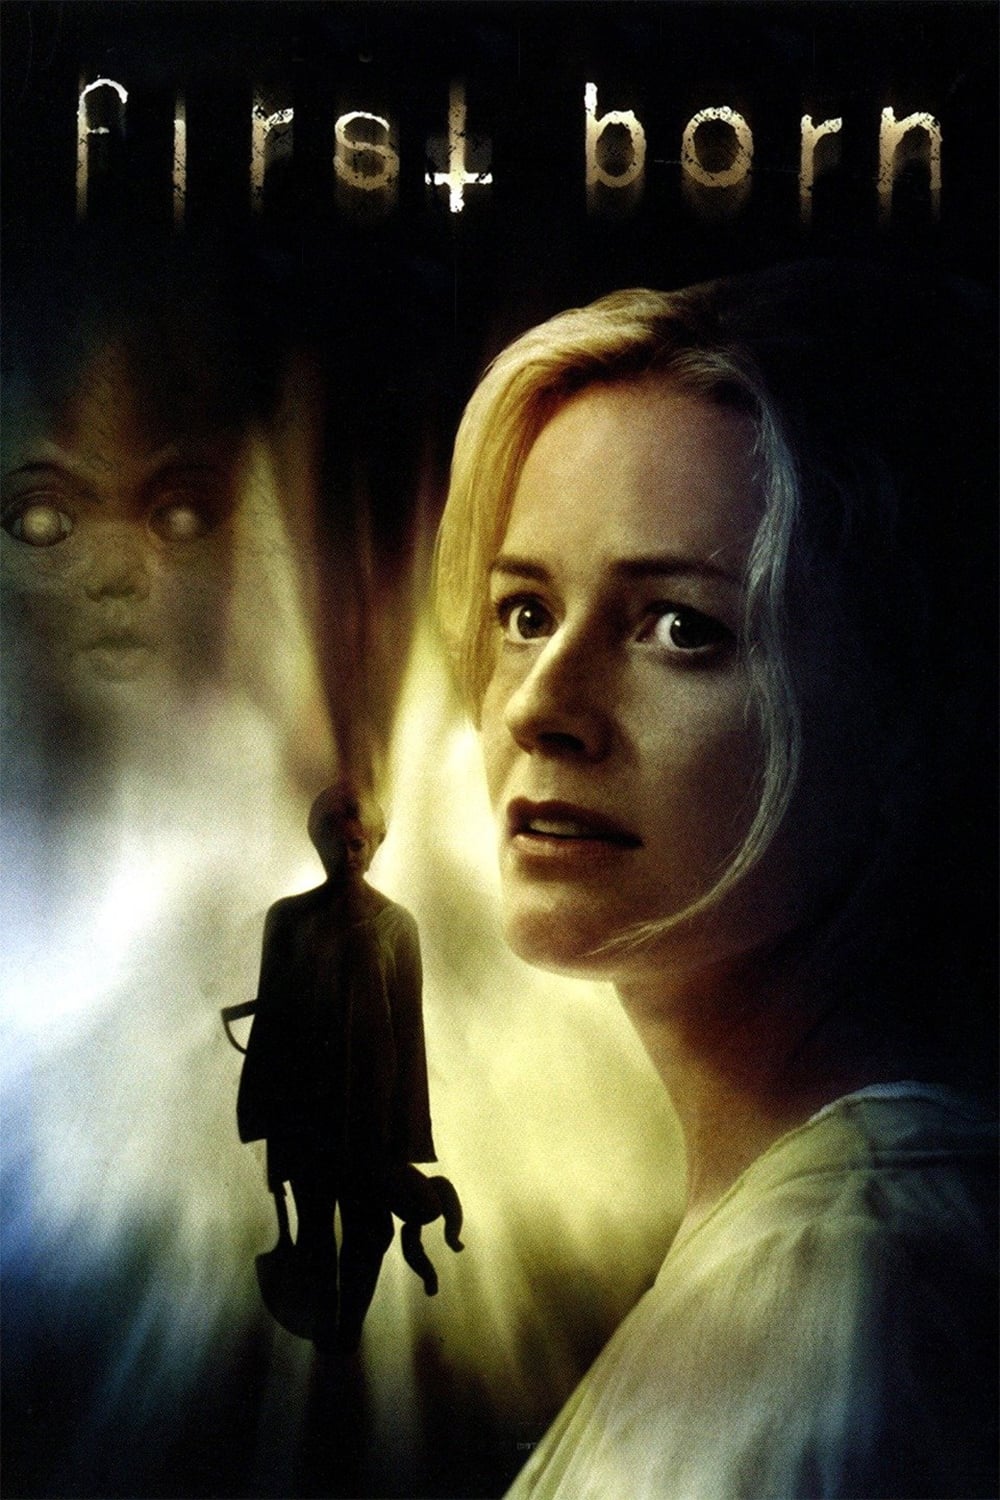 Filha das Sombras (2007)